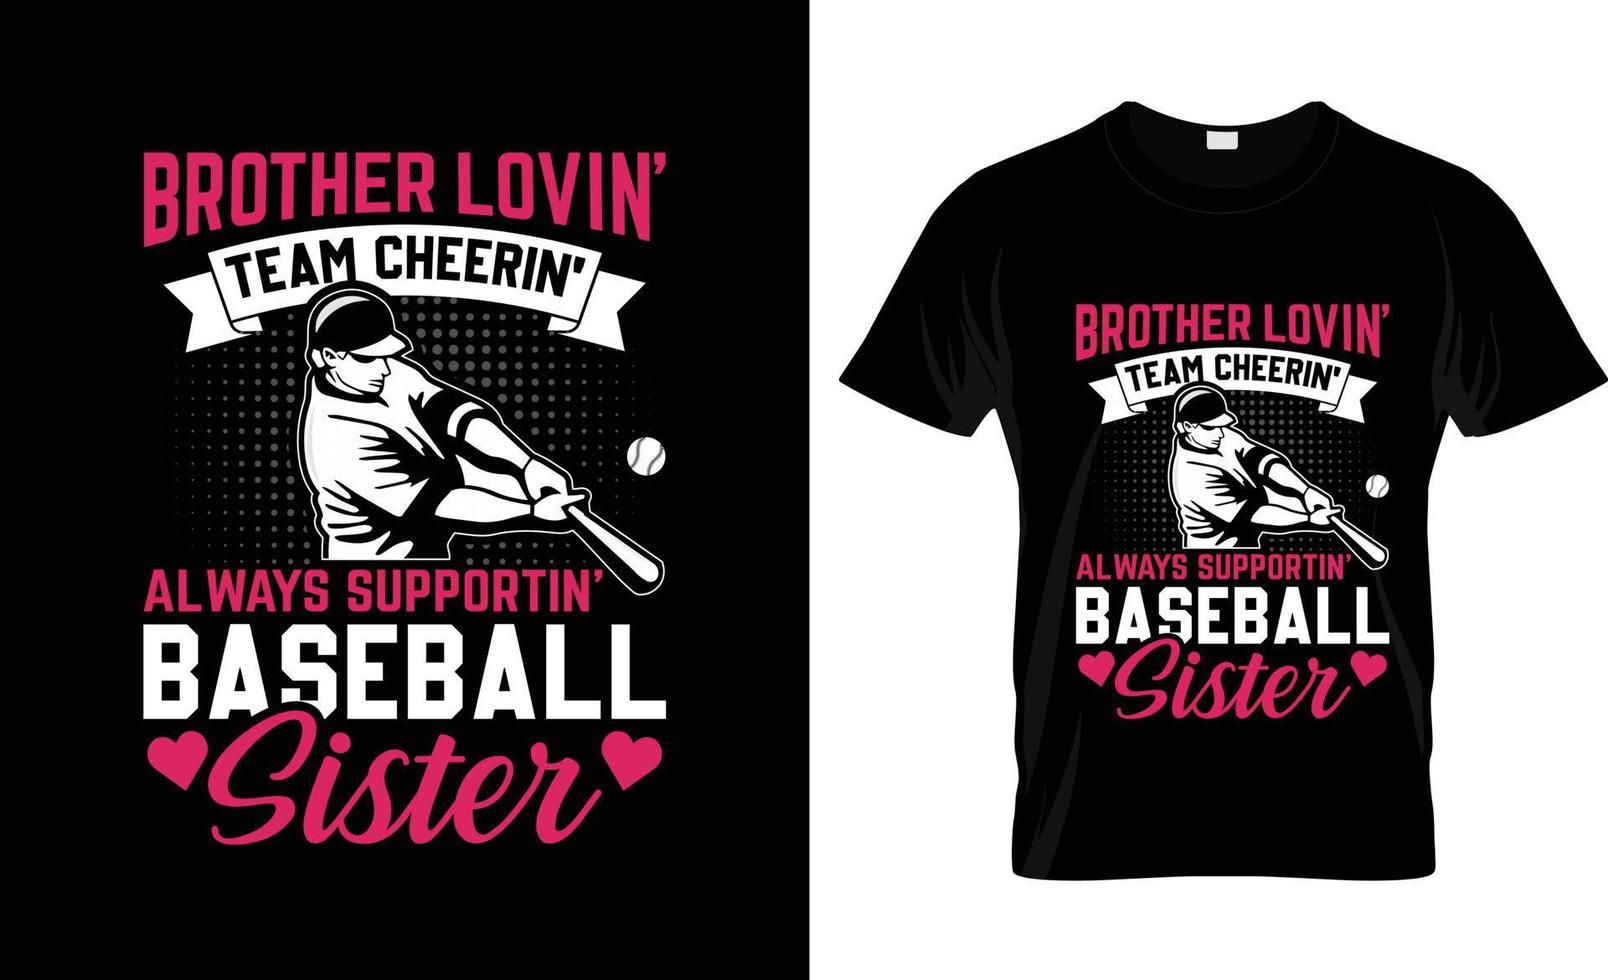 diseño de camisetas de béisbol, eslogan de camisetas de béisbol y diseño de ropa, tipografía de béisbol, vector de béisbol, ilustración de béisbol